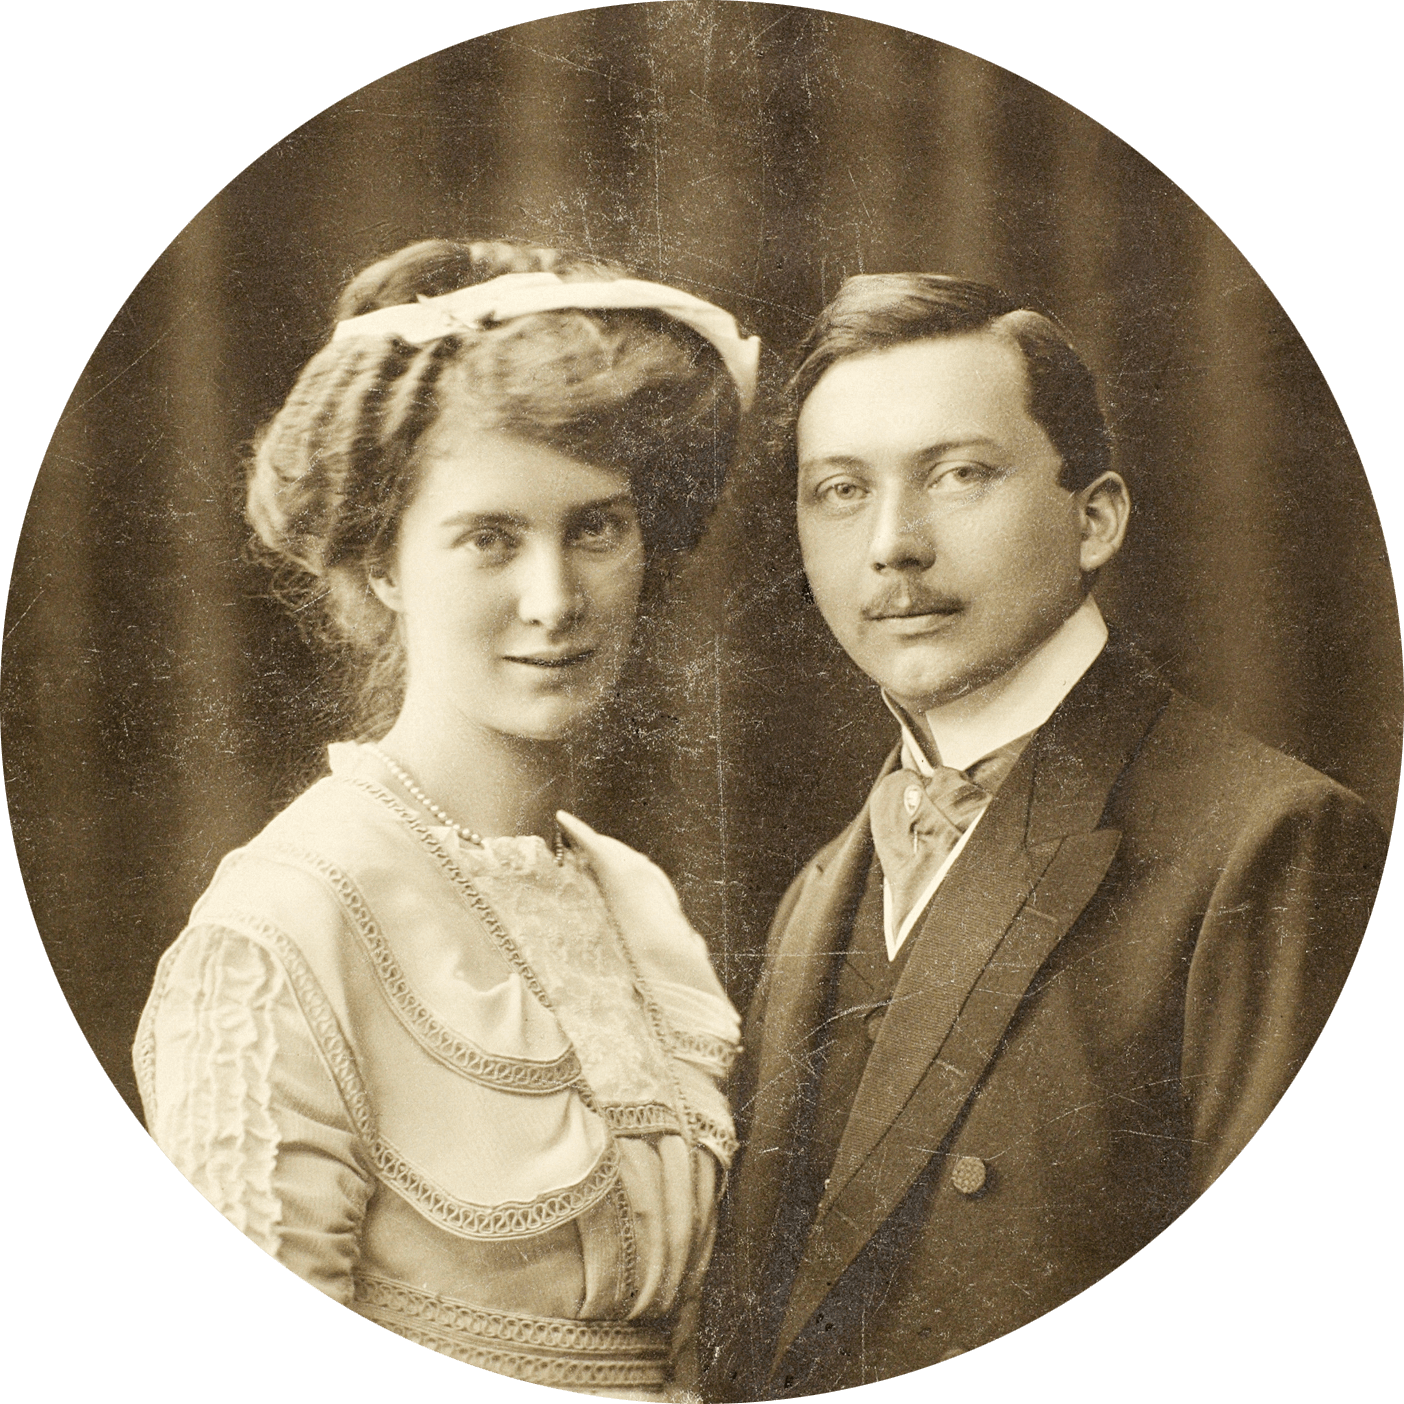  カール・ケスラー（Karl Kessler）とAuguste Eisenmann の結婚式の写真。結婚は1911 年。